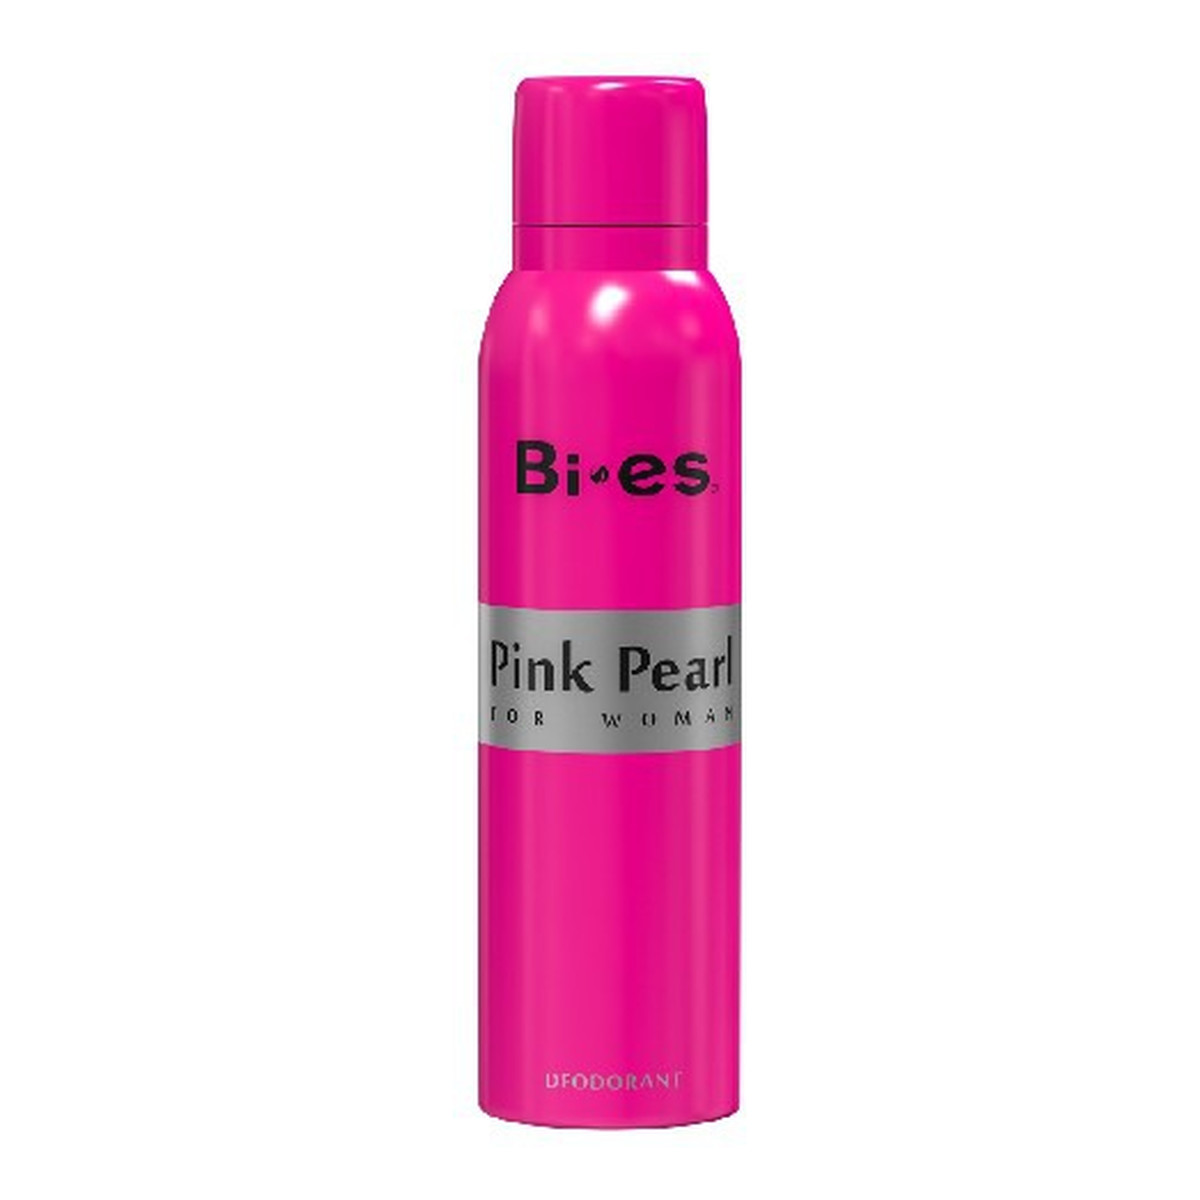 Bi-es Pink Pearl Fabulous Dezodorant 150ml